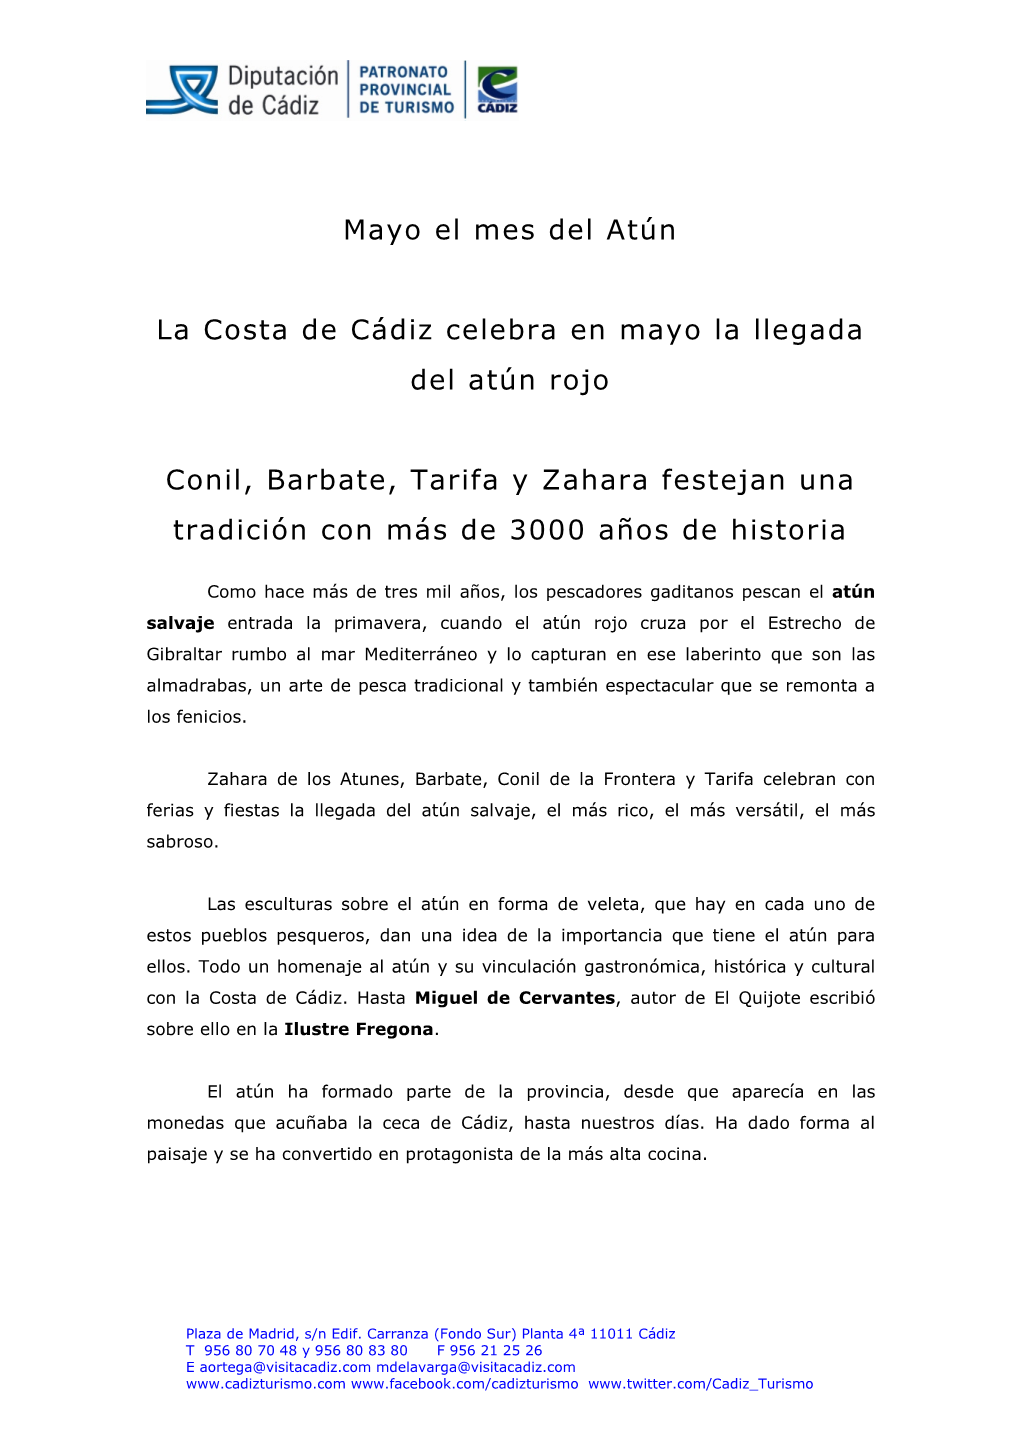 Mayo El Mes Del Atún La Costa De Cádiz Celebra En Mayo La Llegada Del Atún Rojo Conil, Barbate, Tarifa Y Zahara Festejan